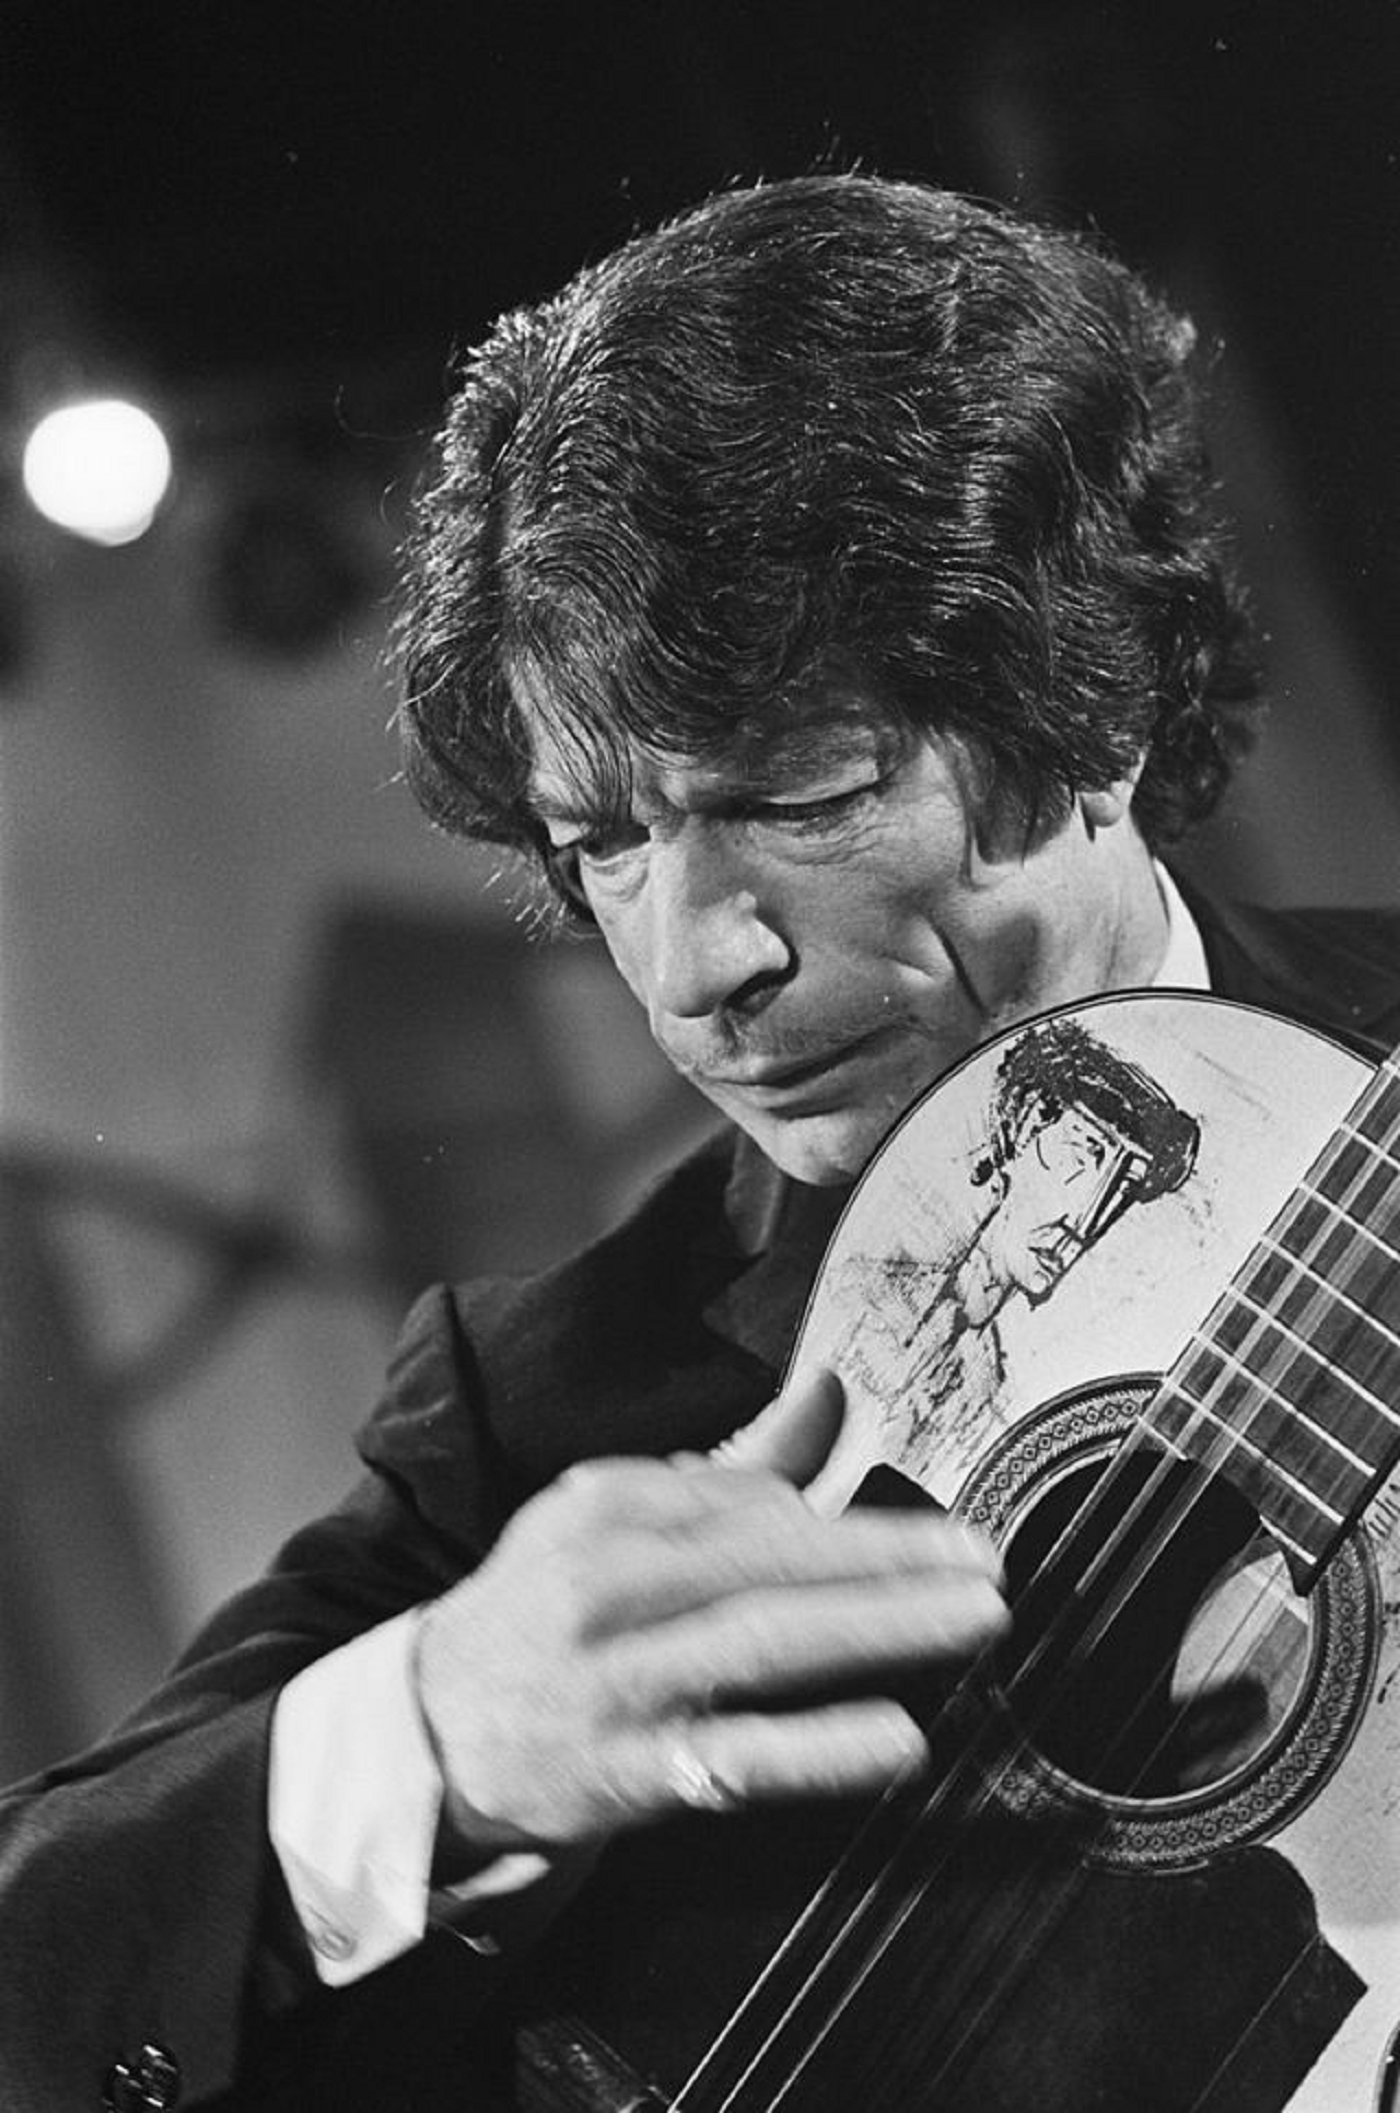 Nace Ricard Baliardo, el guitarrista gitano más internacional